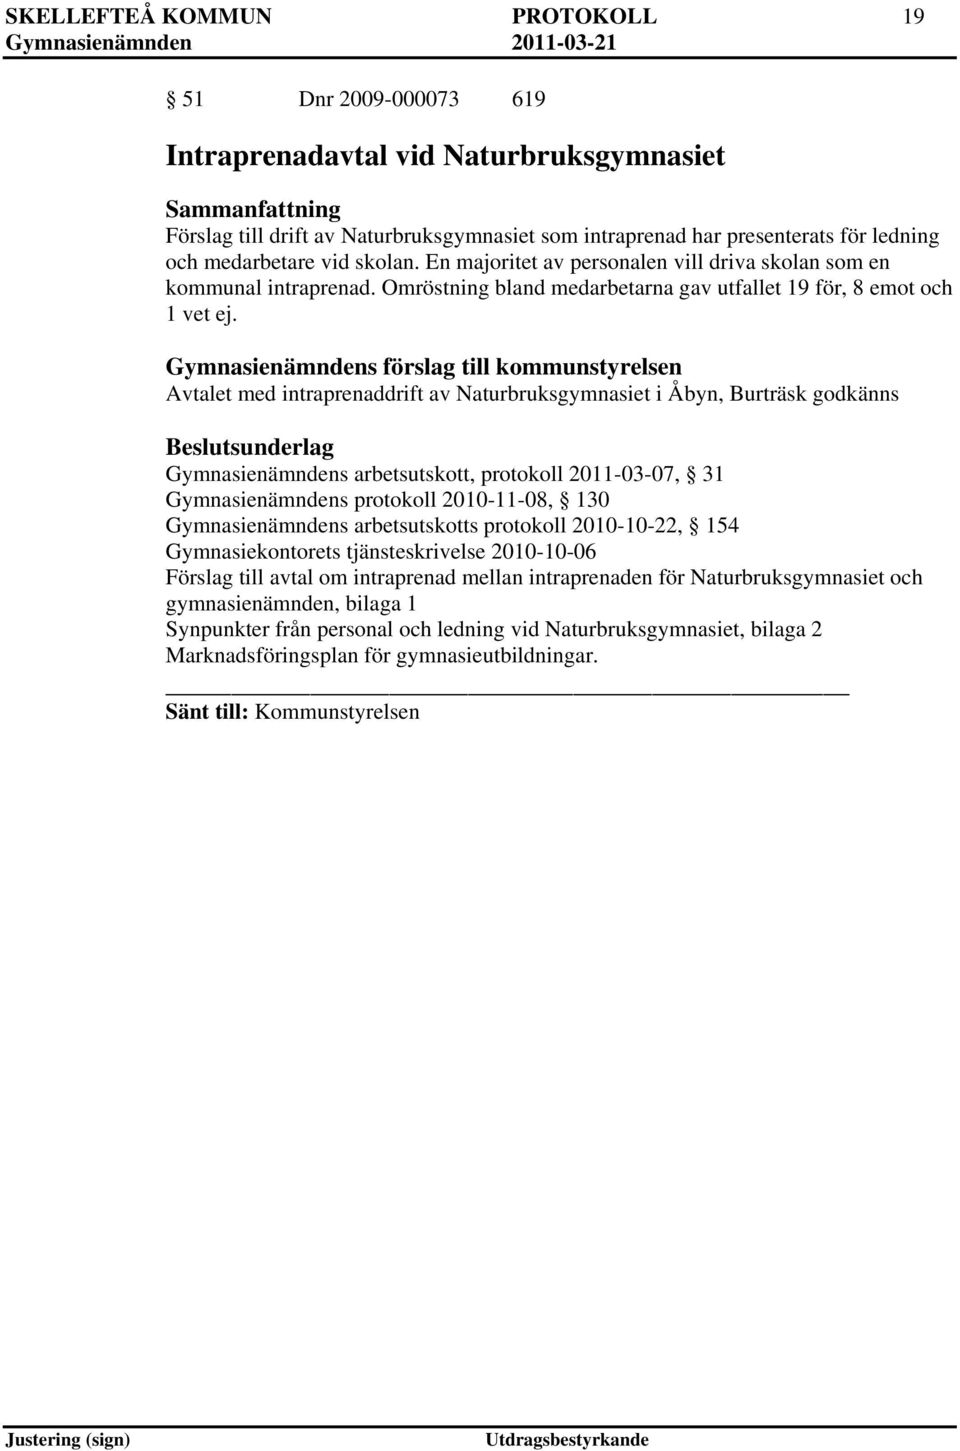 Gymnasienämndens förslag till kommunstyrelsen Avtalet med intraprenaddrift av Naturbruksgymnasiet i Åbyn, Burträsk godkänns Gymnasienämndens arbetsutskott, protokoll 2011-03-07, 31 Gymnasienämndens